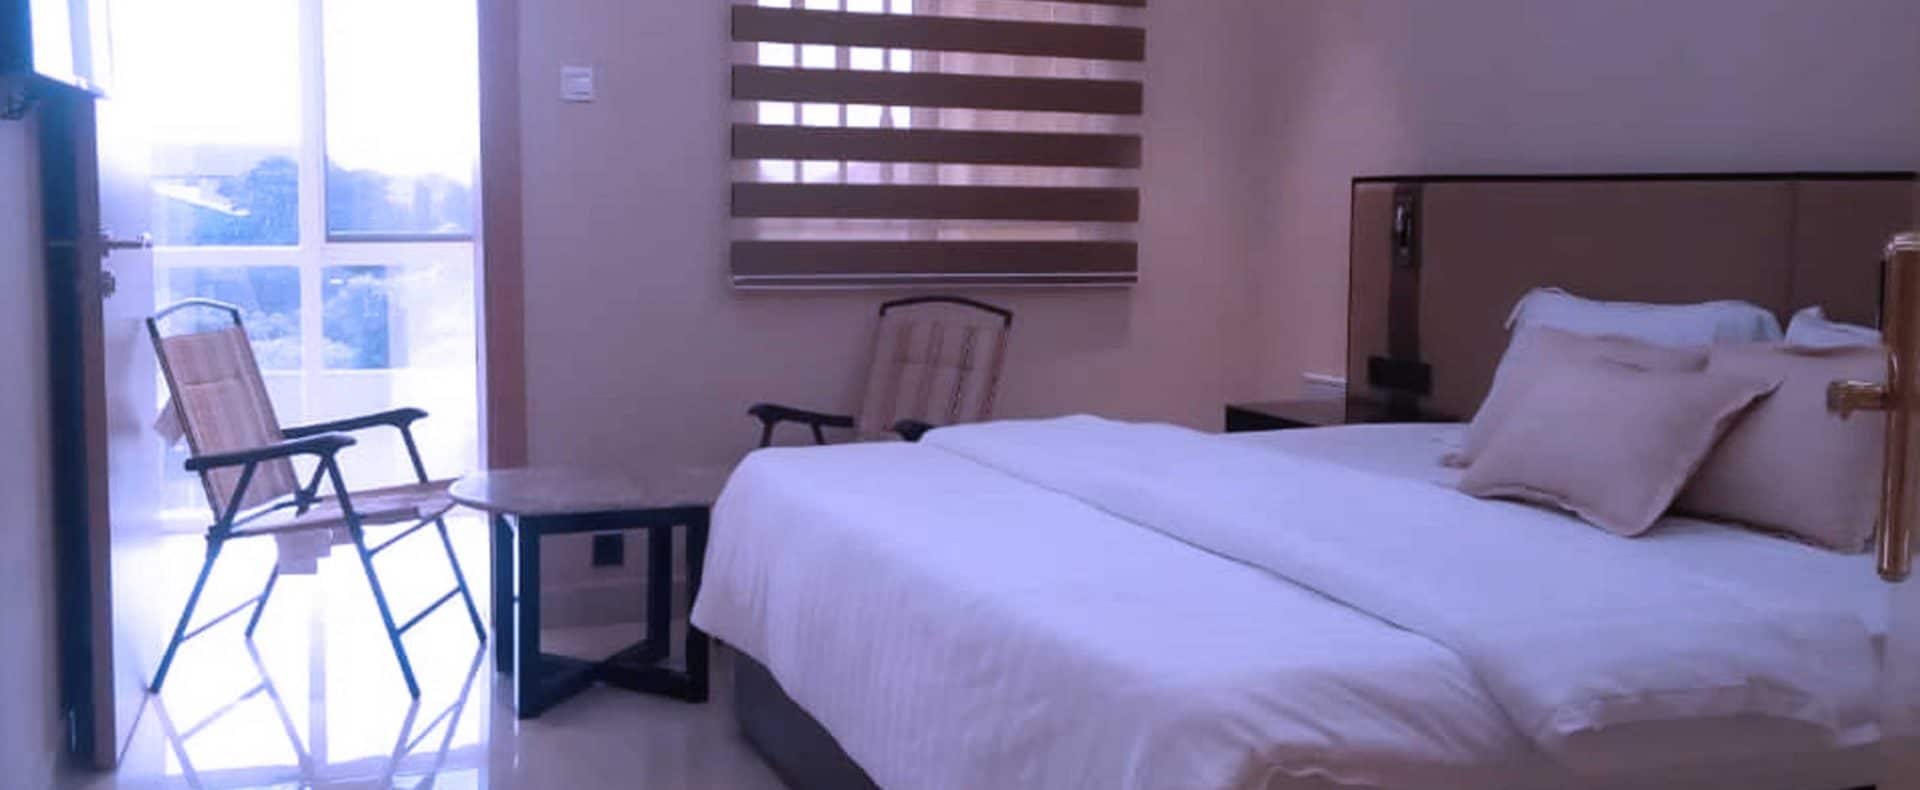 Hotel Exchequer Room In Owerri Imo Nigeria